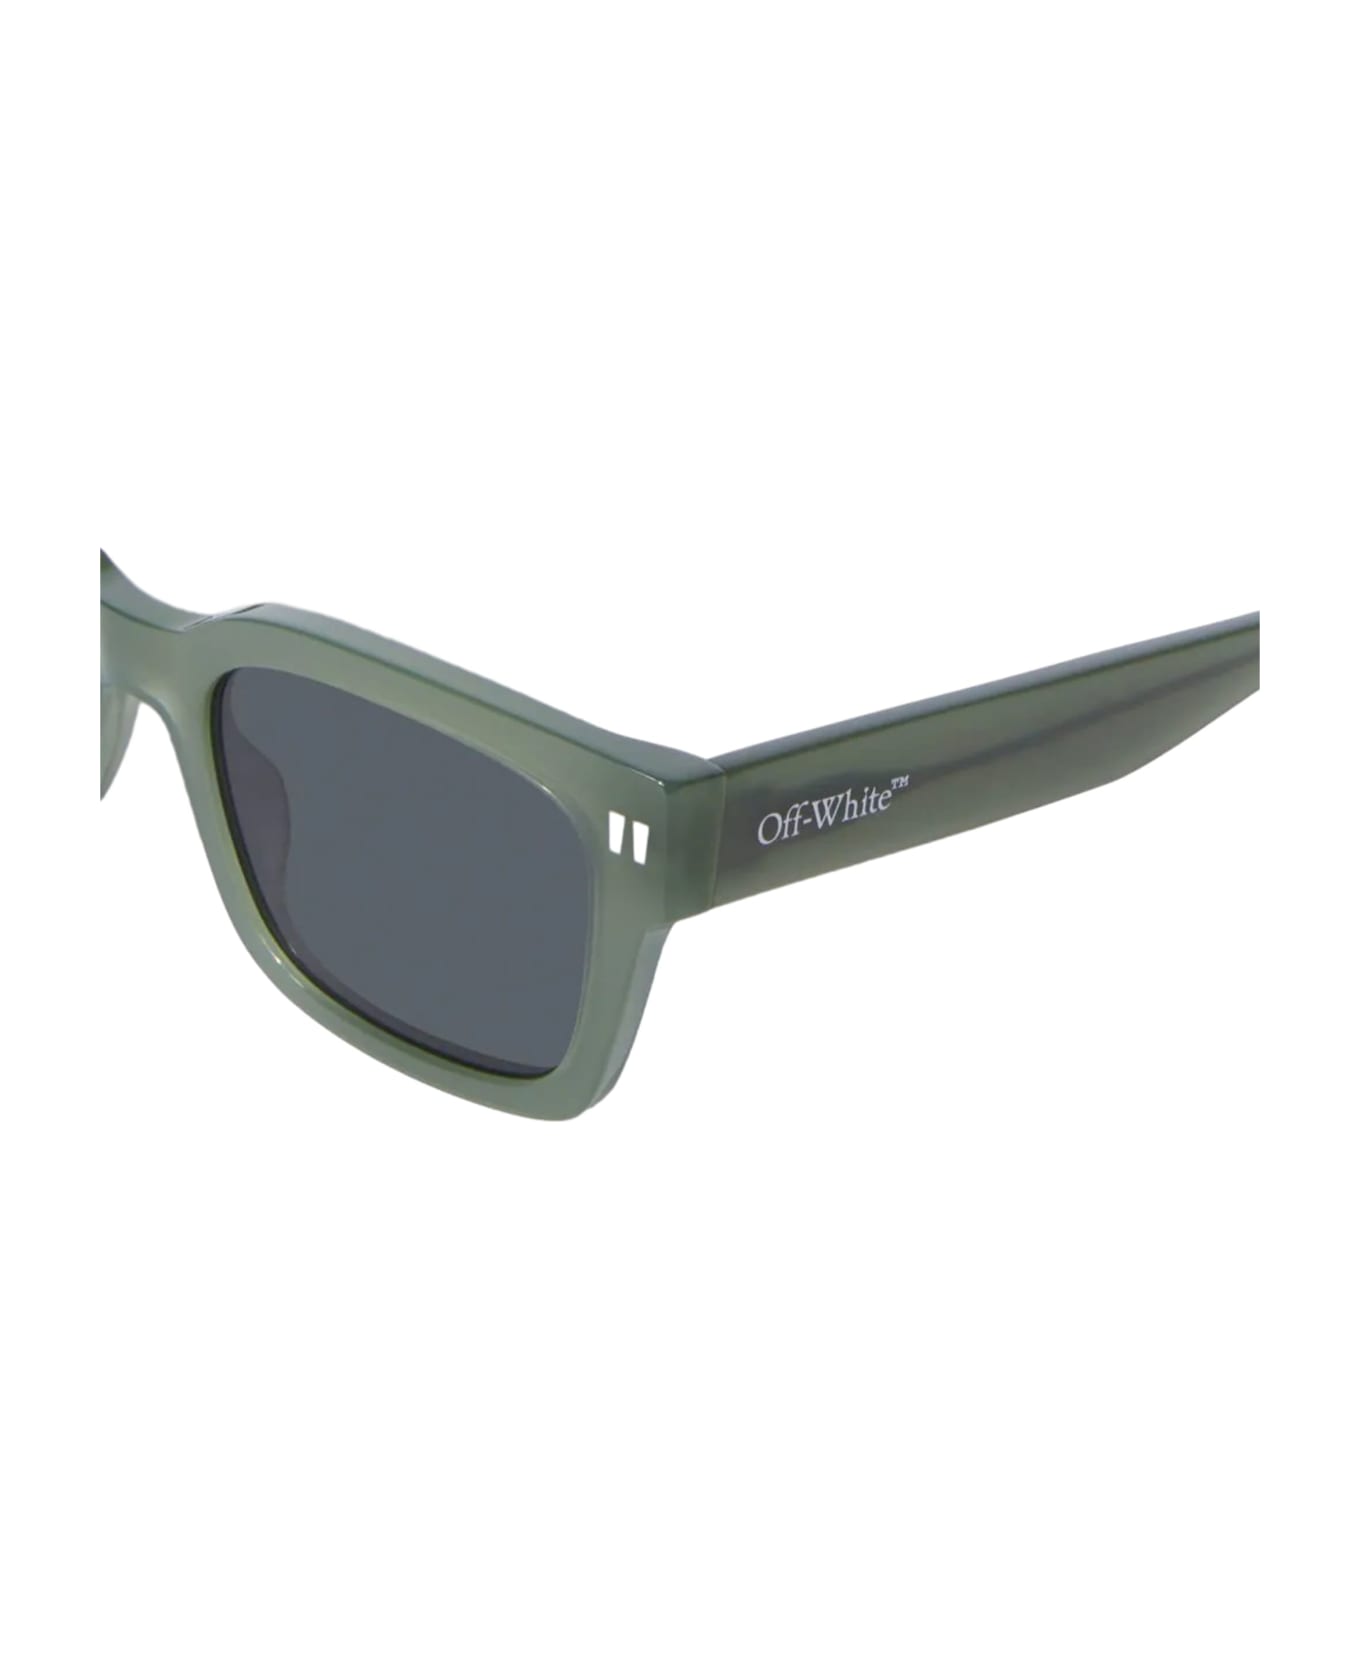 Off-White Midland Sunglasses - olive green